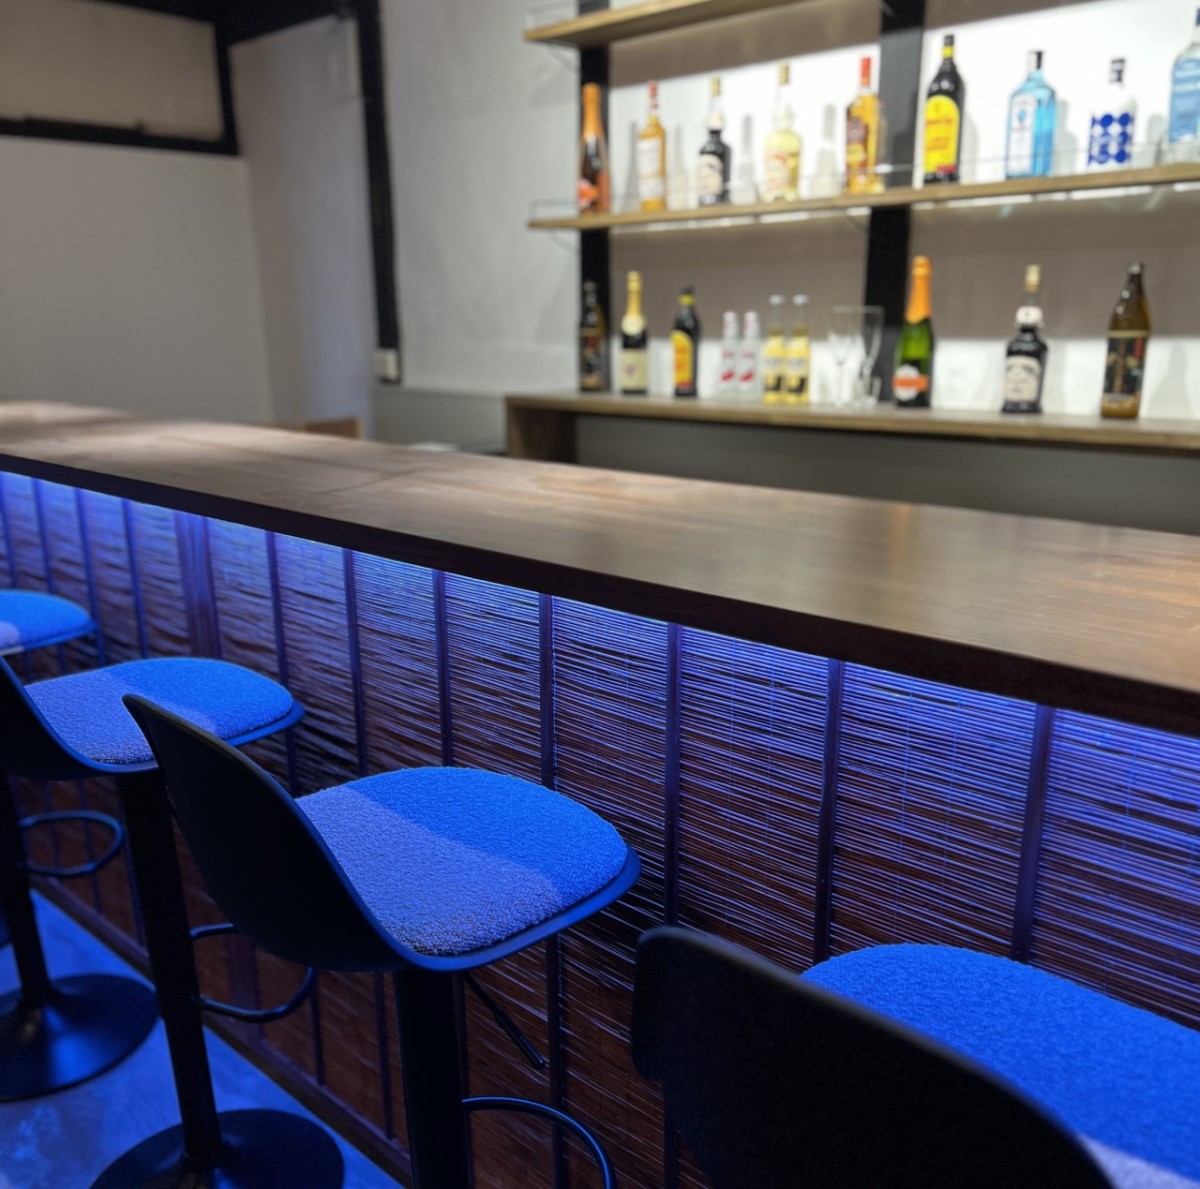 島根県安来市にオープンした『古民家立ち飲みBarはなを』の店内の様子